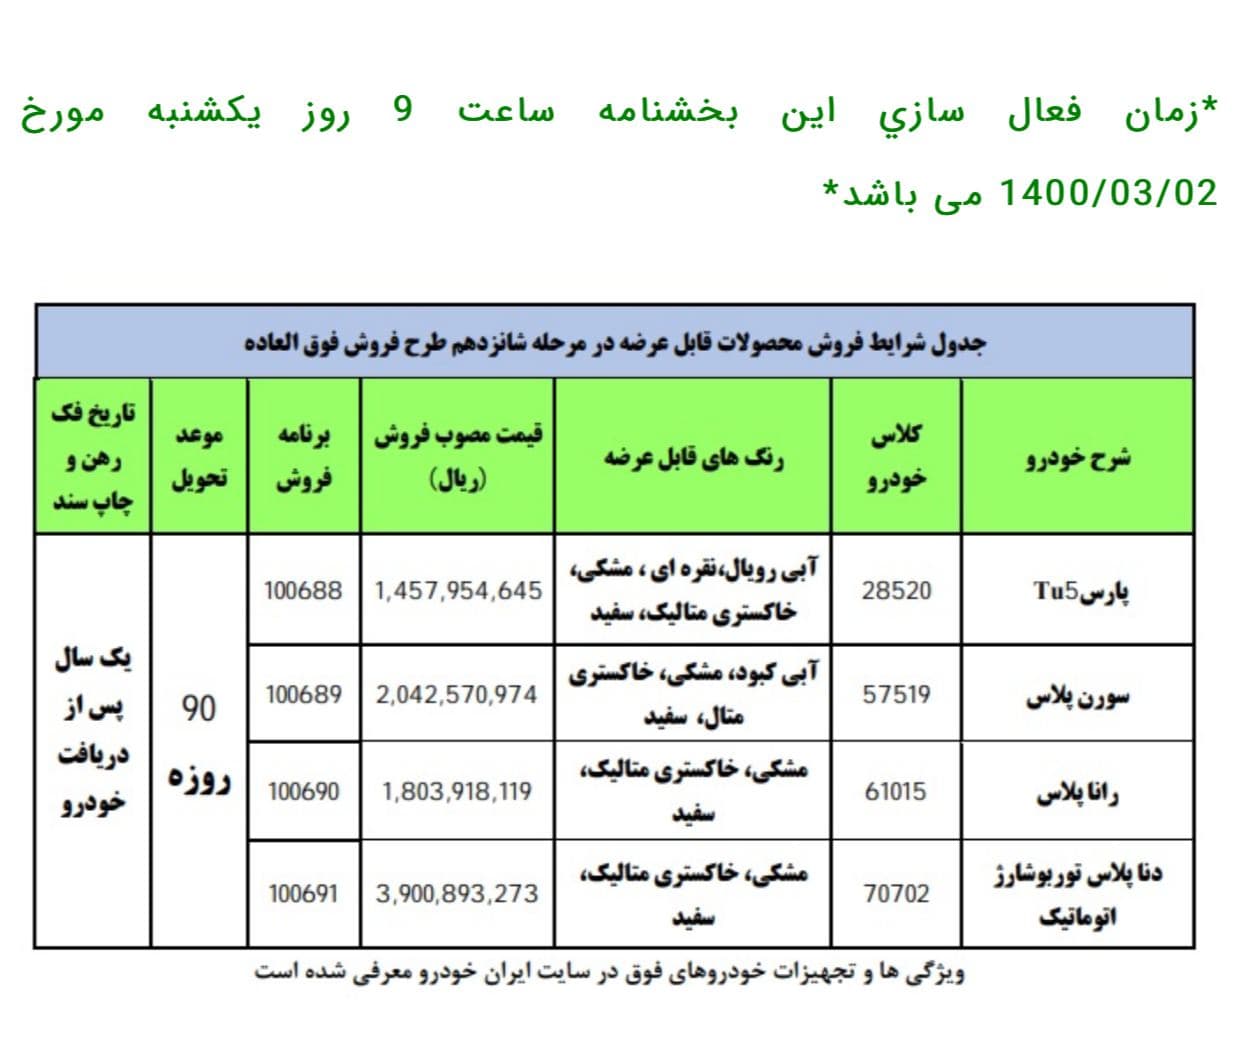 ثبت نام جدید فروش شرکت ایران خودرو بمانسبت حماسه آزادسازی خرمشهر